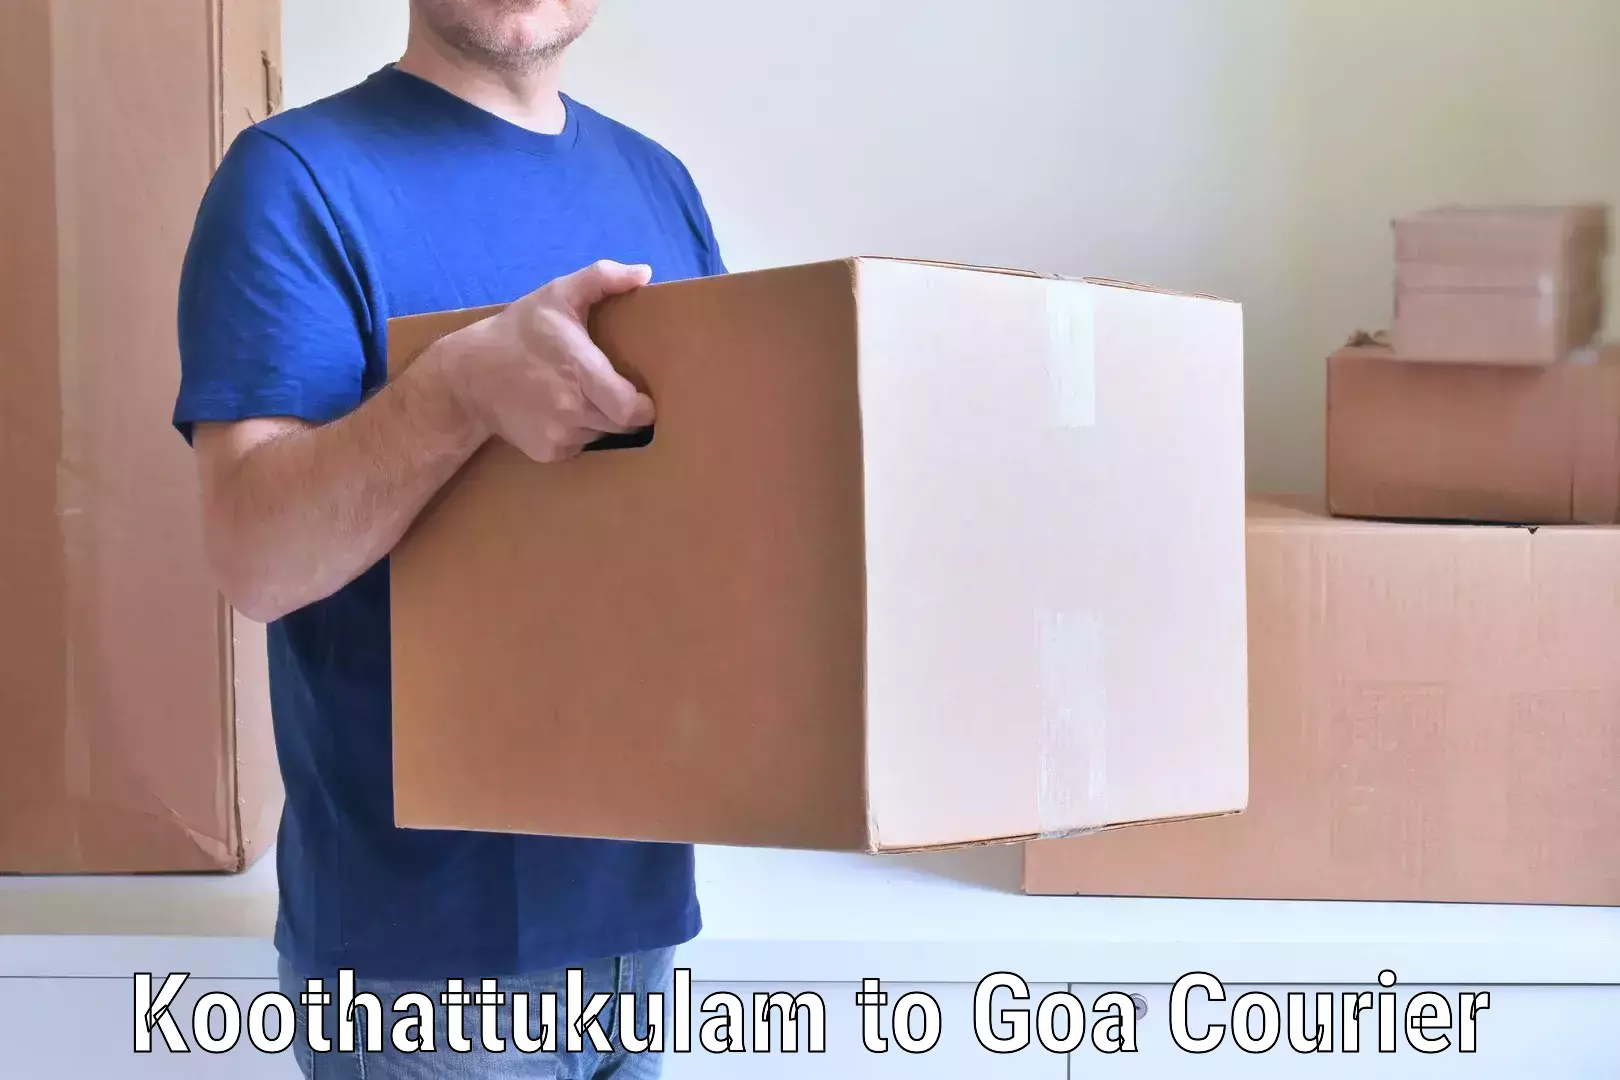 Nationwide household movers Koothattukulam to Panaji